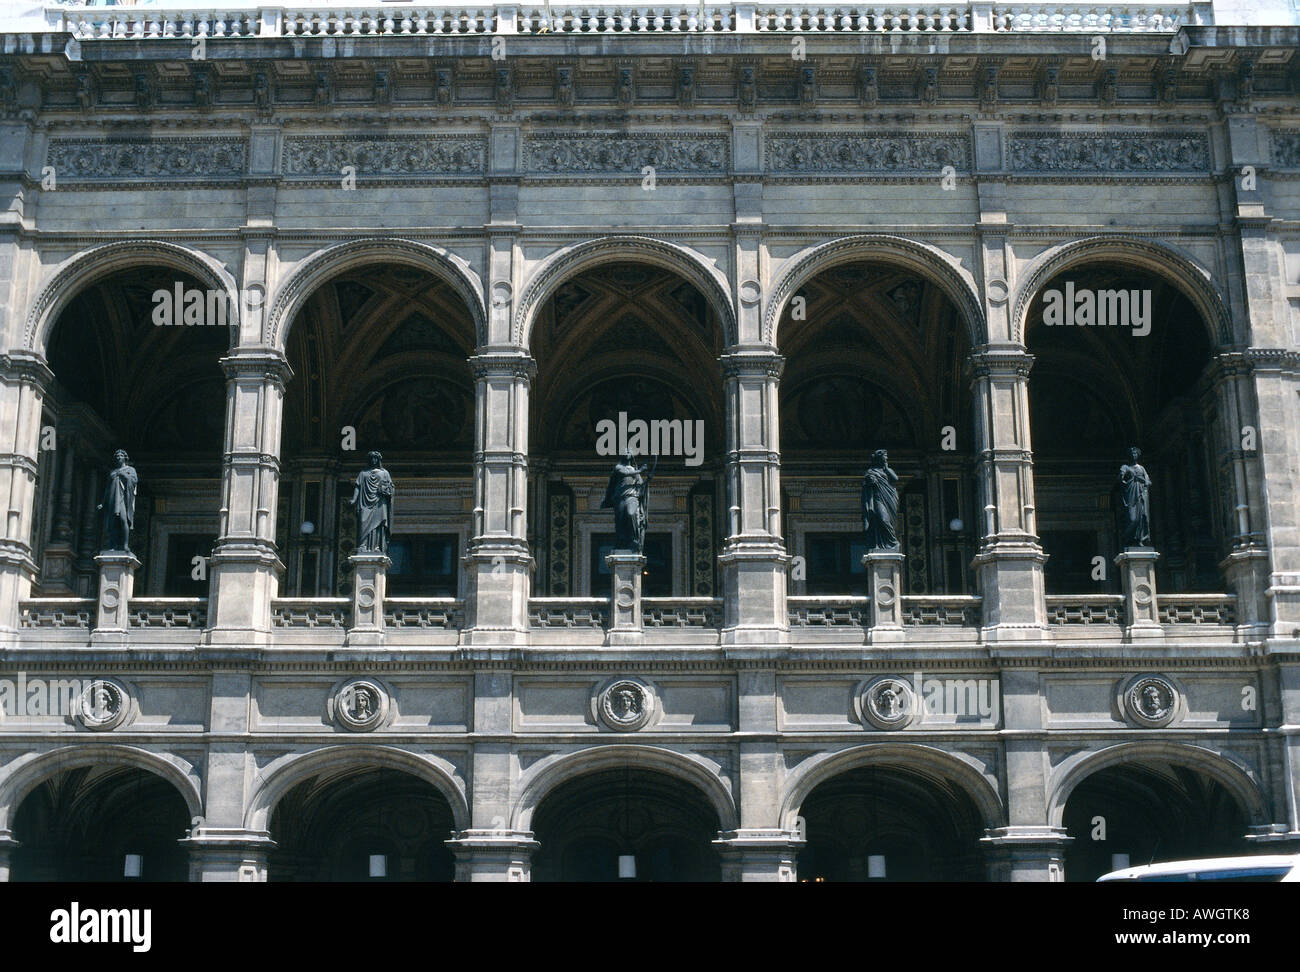 Austria, Viena, Staatsoper , loggia en fachada neoclásico de la Ópera Estatal de Viena, mostrando estatuas de bronce Foto de stock